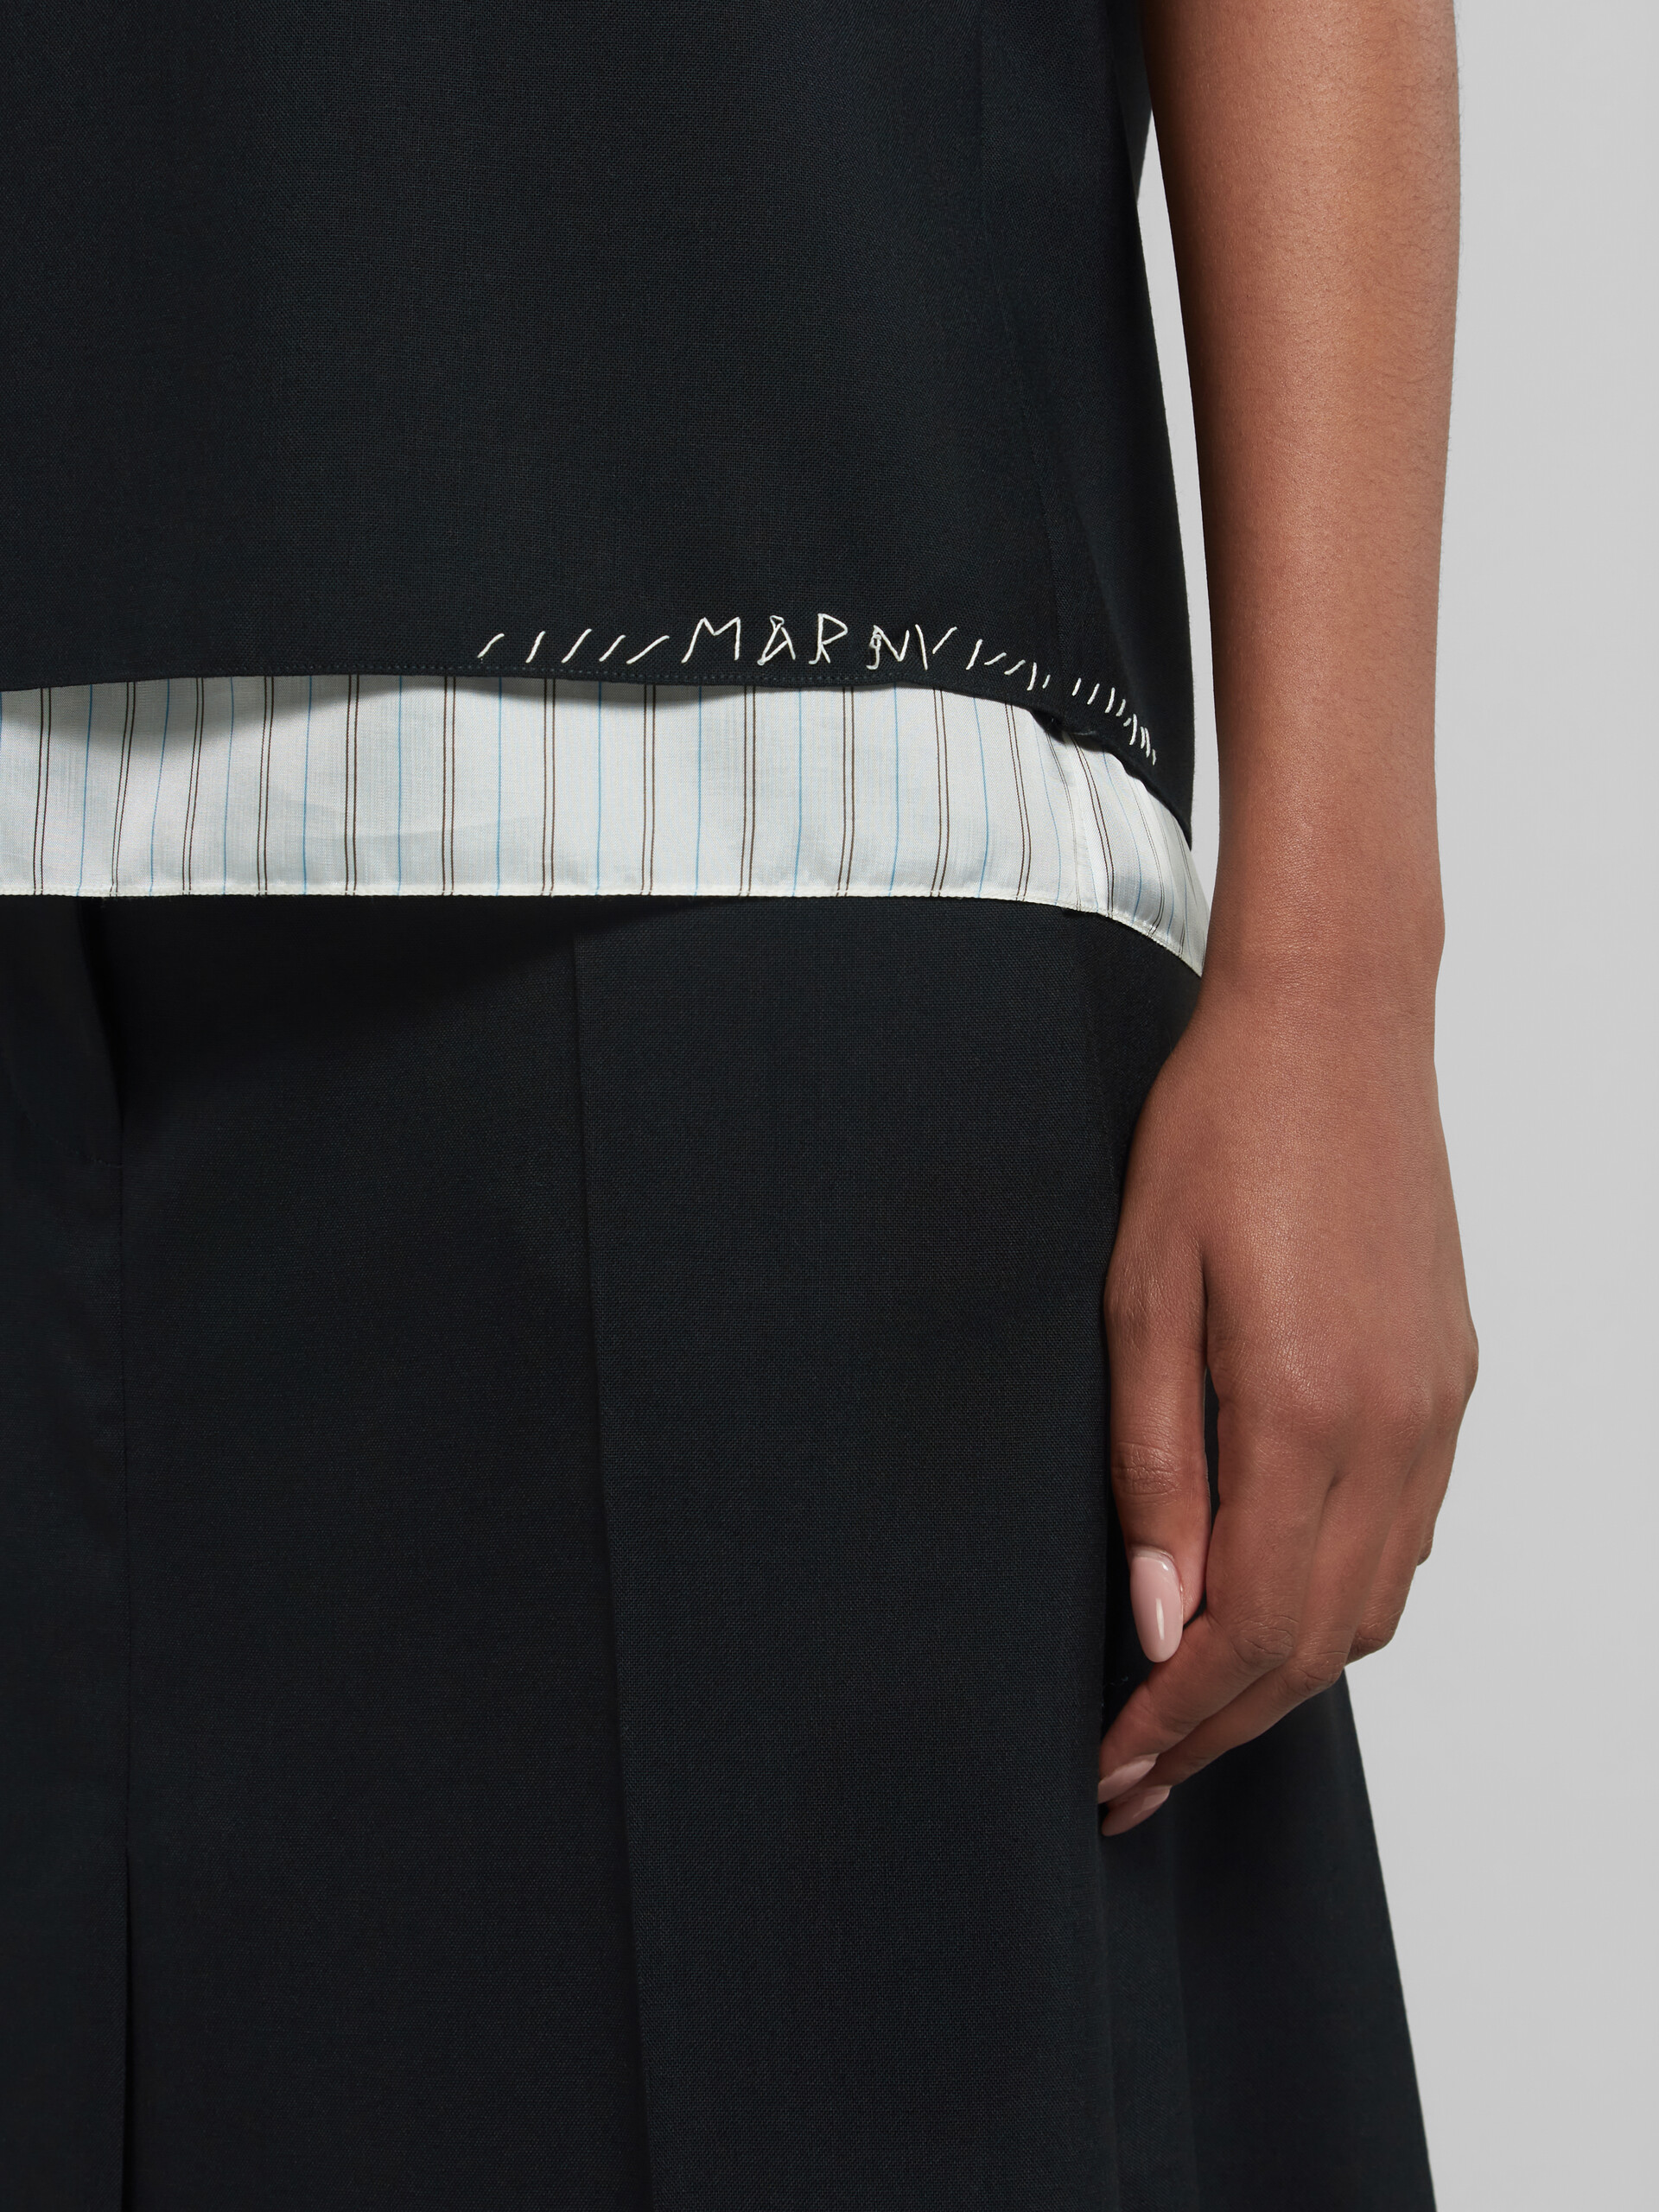 Schwarzes ärmelloses Top aus Tropenwolle mit Marni-Flicken - Hemden - Image 4